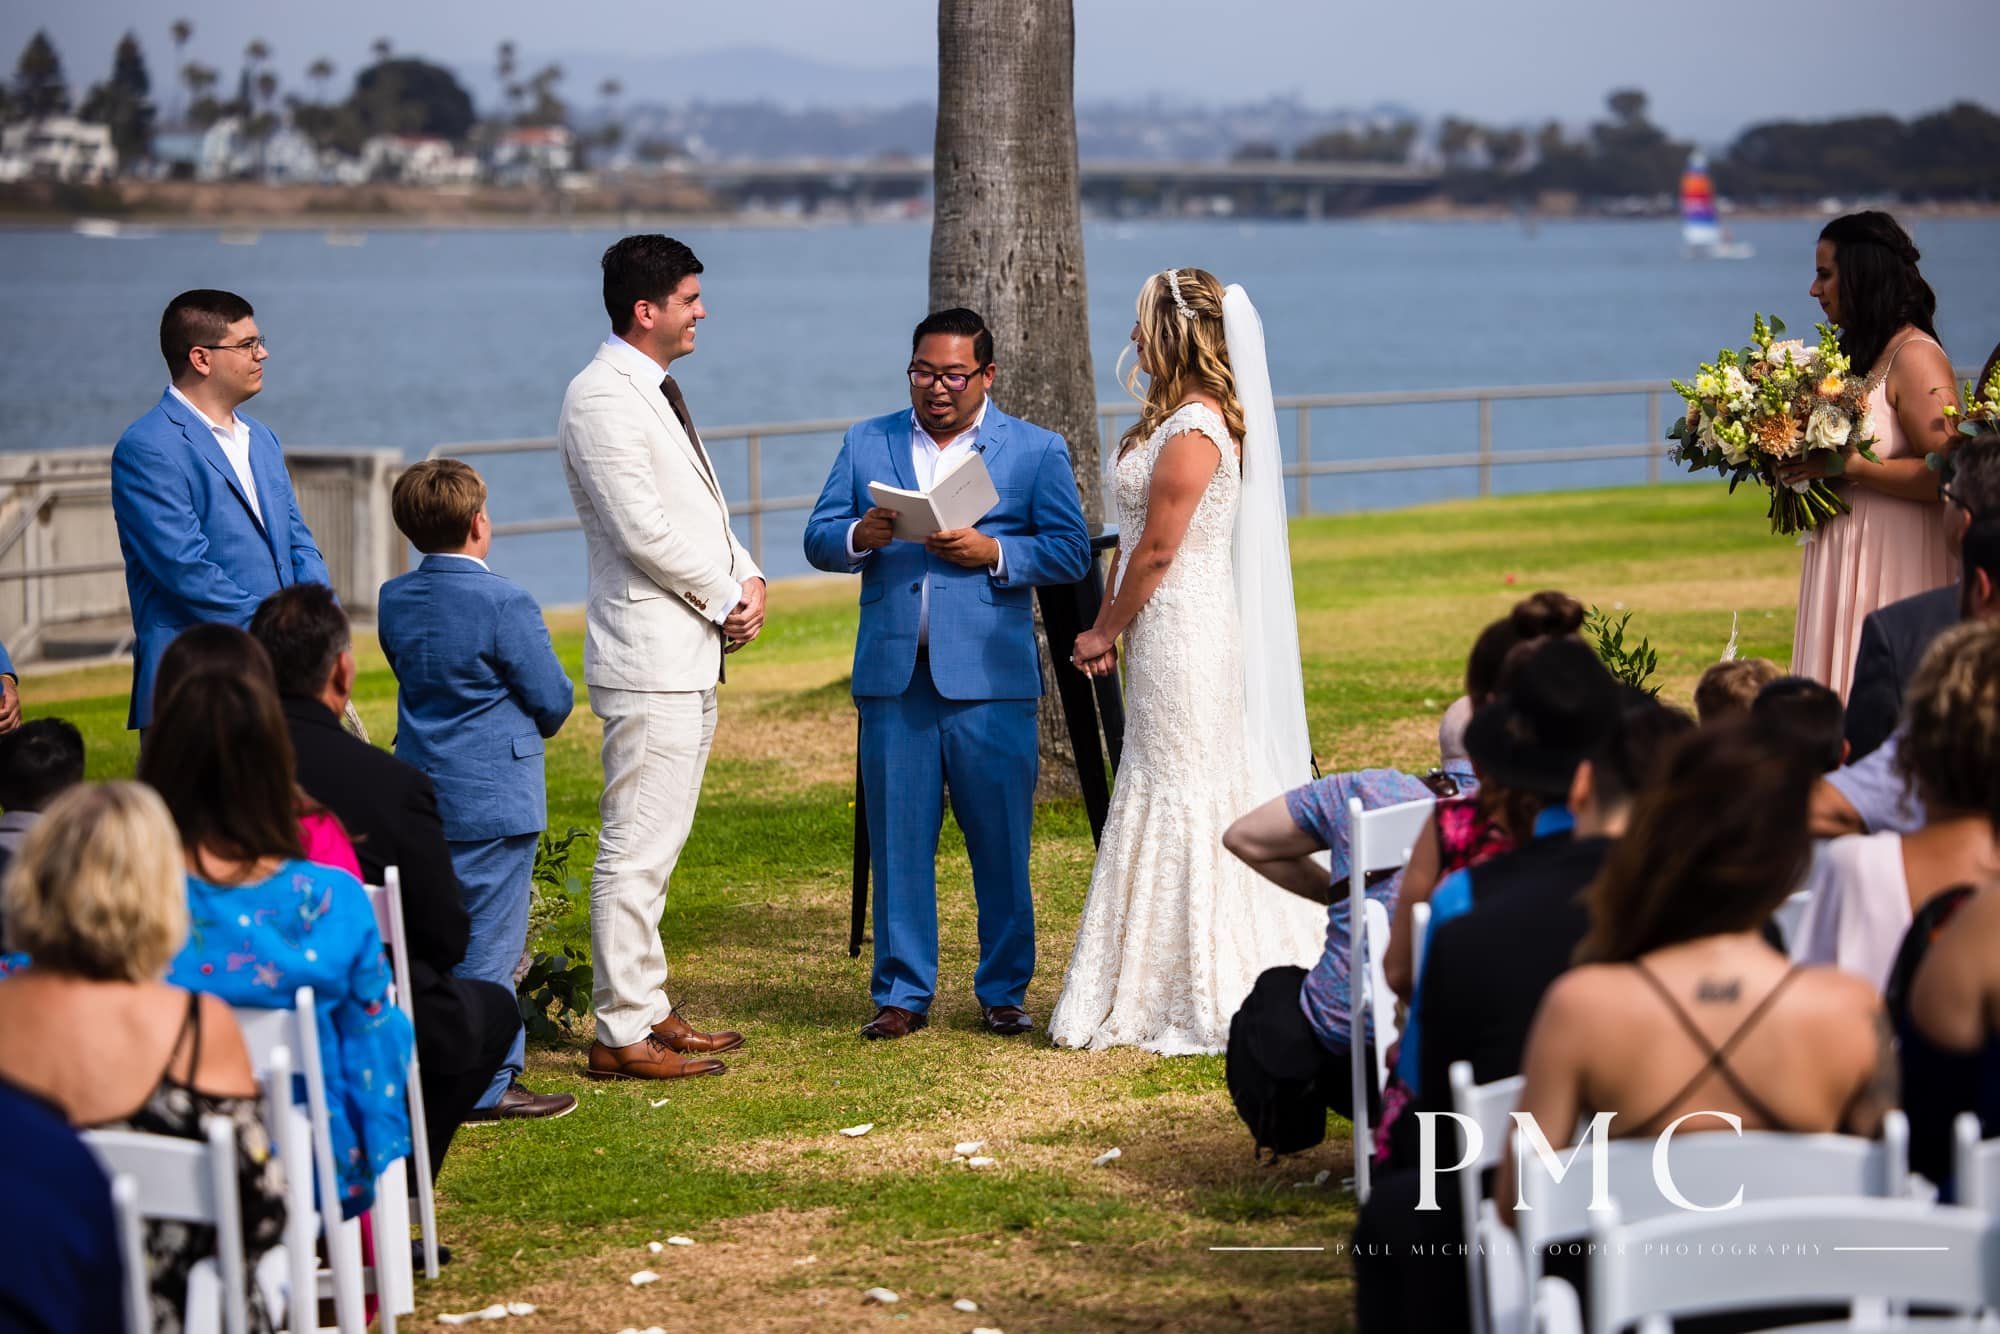 Tower Beach Club - Mission Bay Wedding - Best San Diego Wedding Photographer-13.jpg